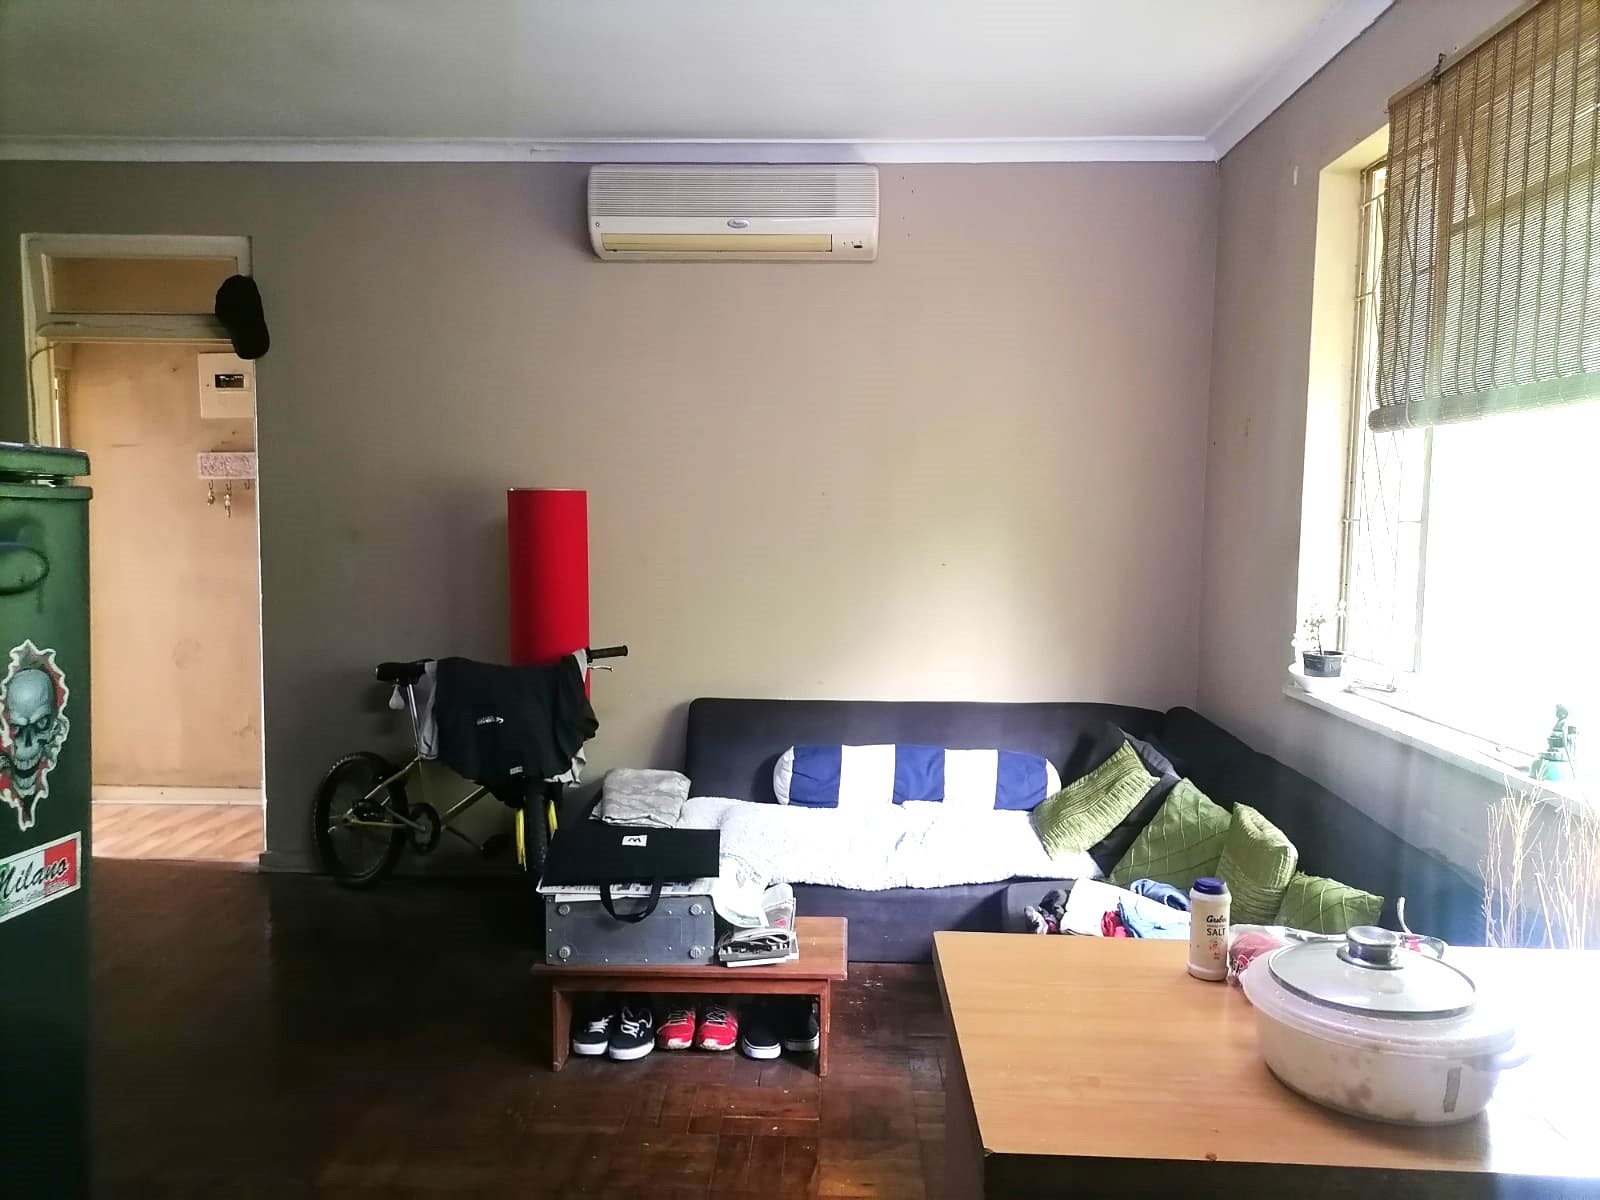 1 Bedroom Property for Sale in Bulwer KwaZulu-Natal